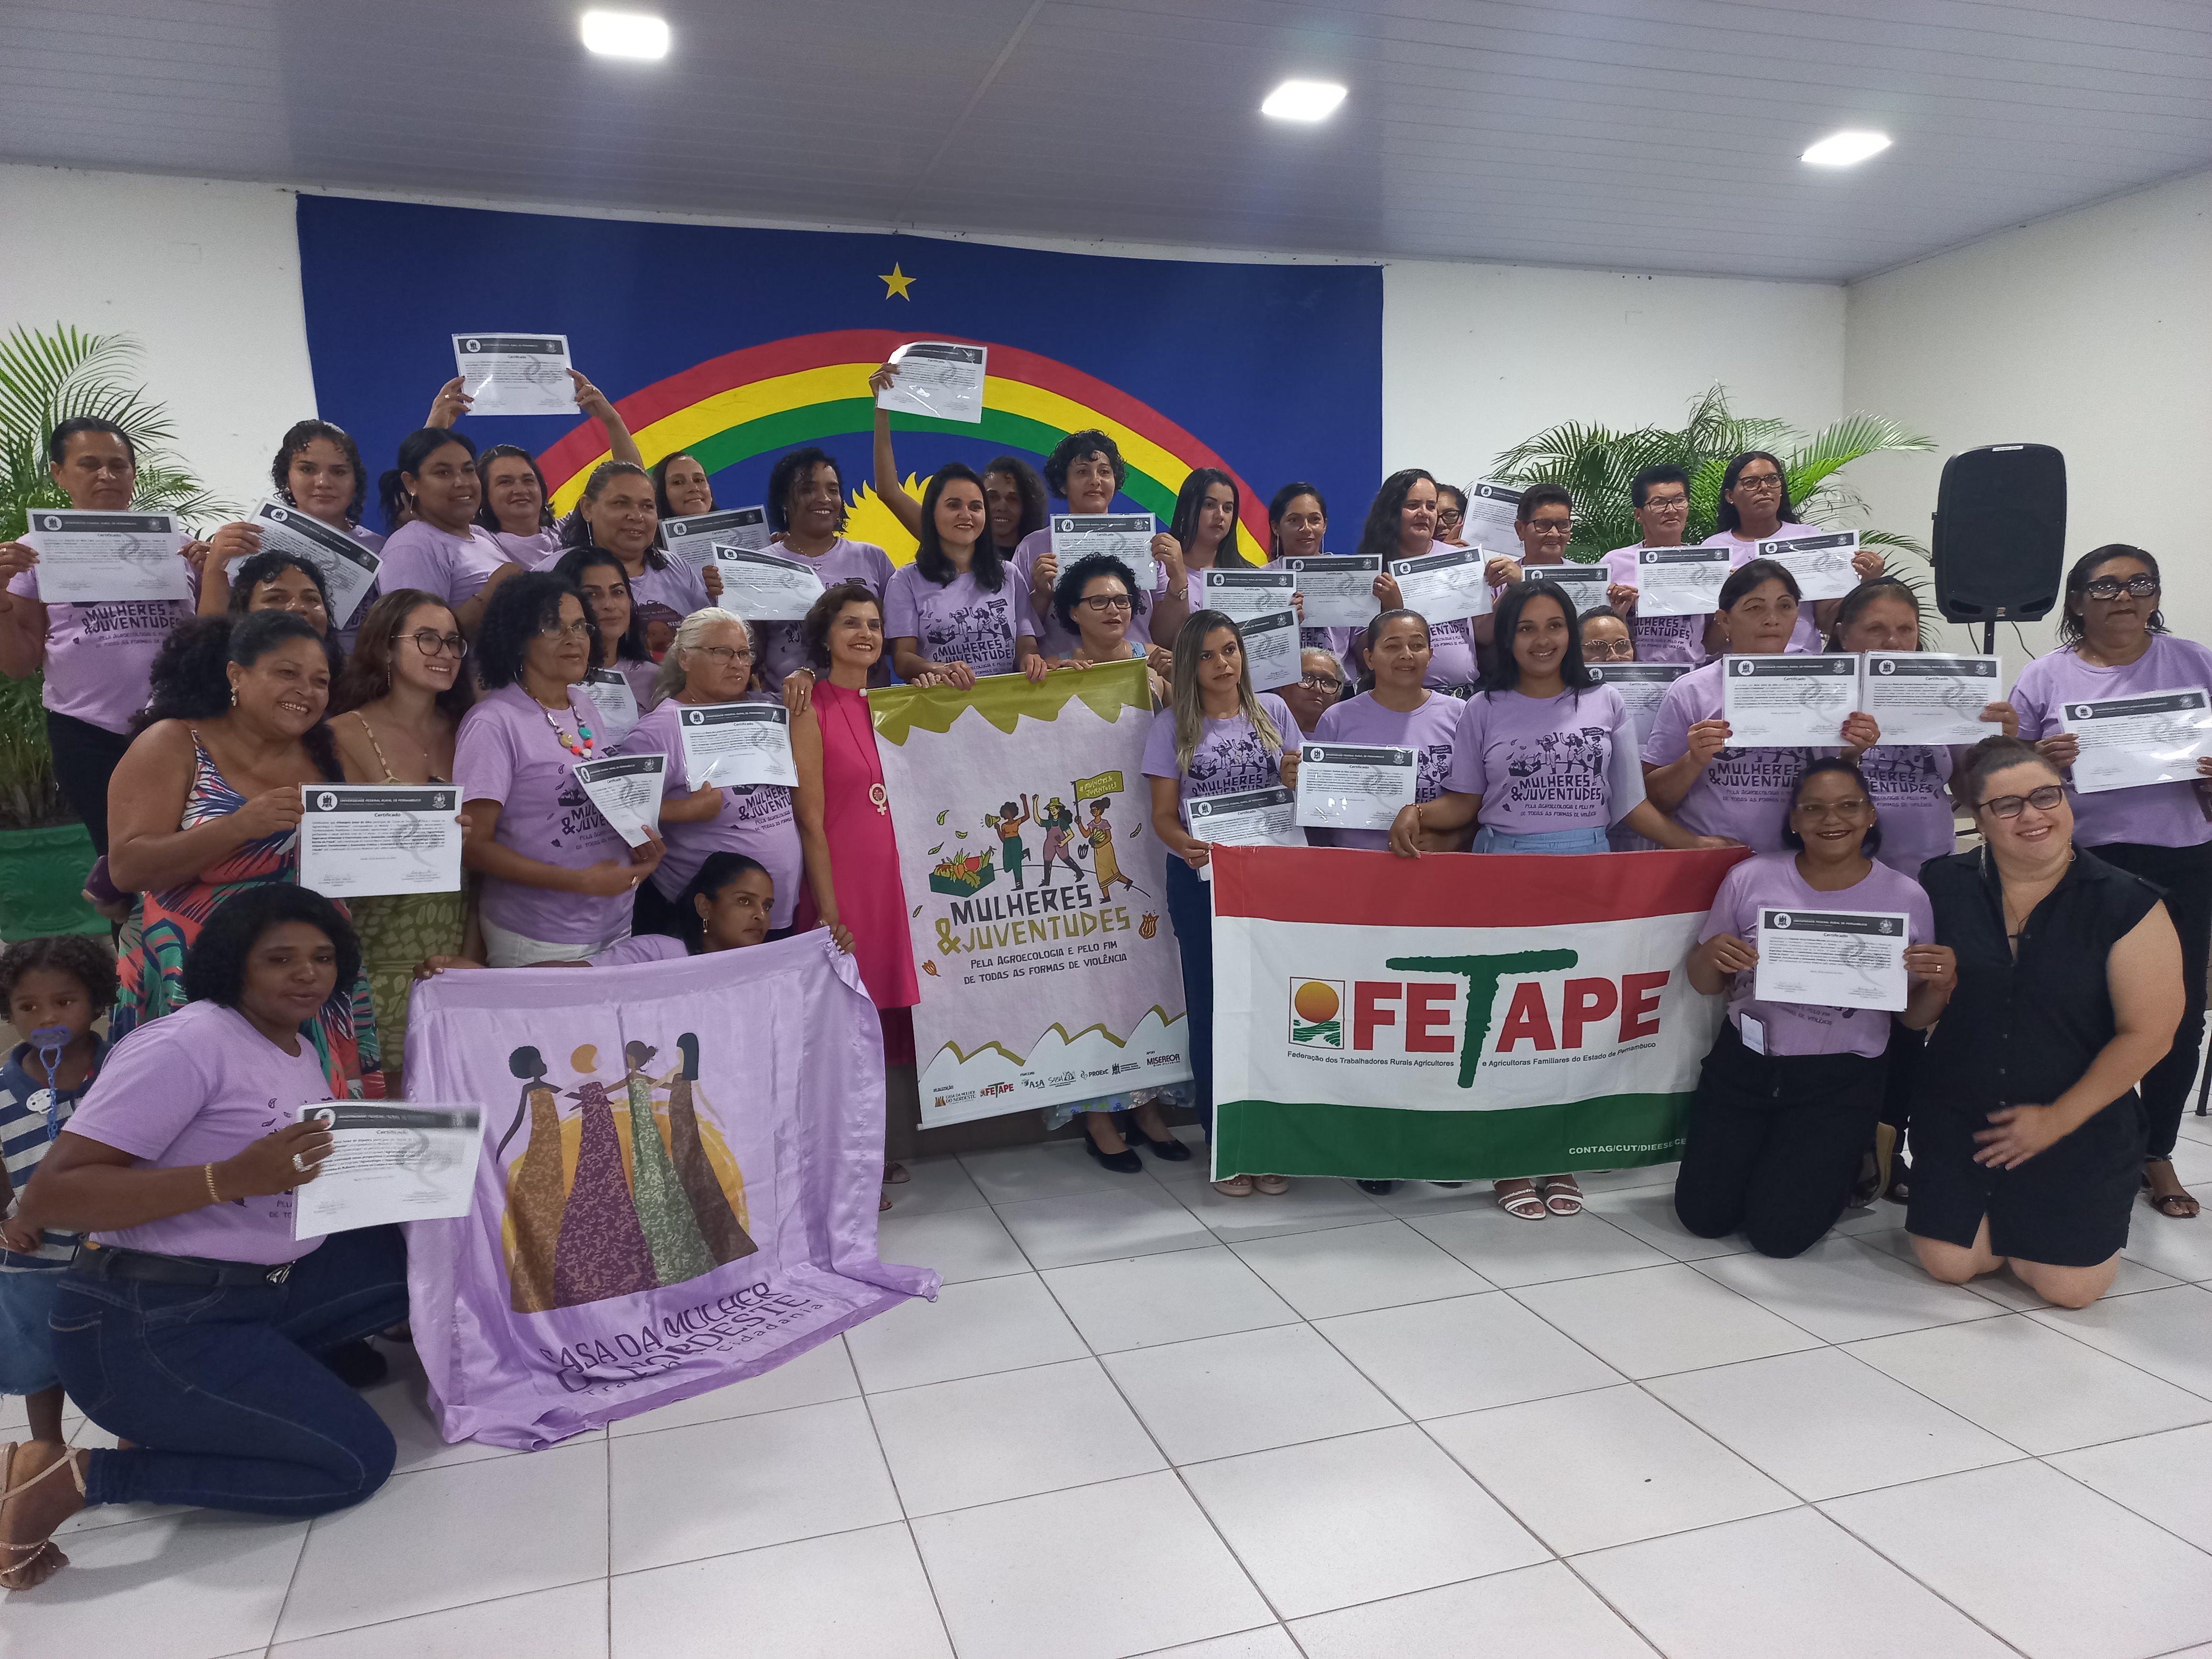 CMN e Fetape encerram projeto de Mulheres e Juventudes com um grande encontro no município de Carpina